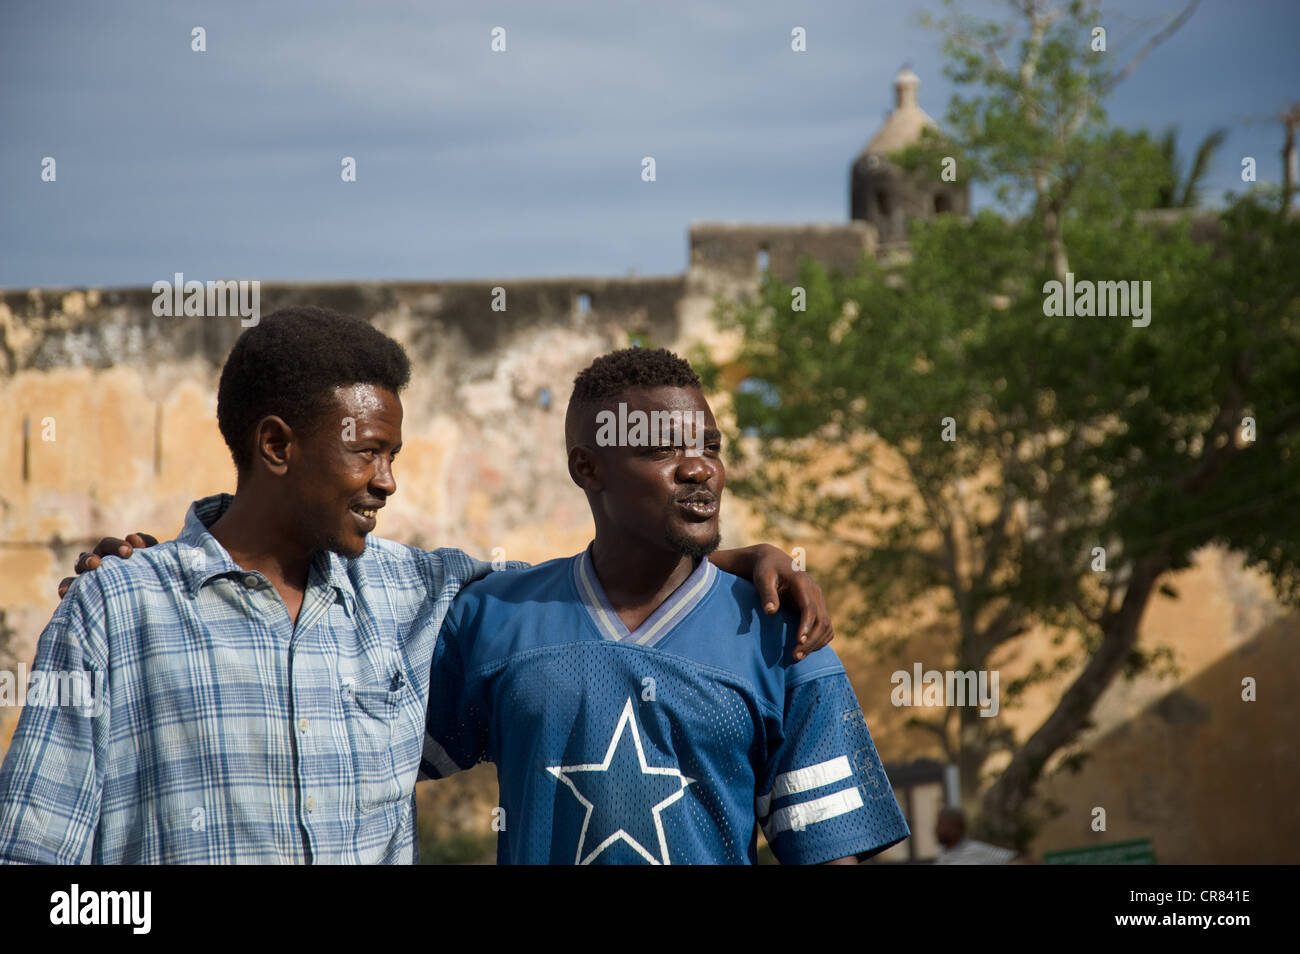 Porträt von zwei Männern, freundlich lächelnd. Mombasa, Kenia, Ostafrika. Stockfoto